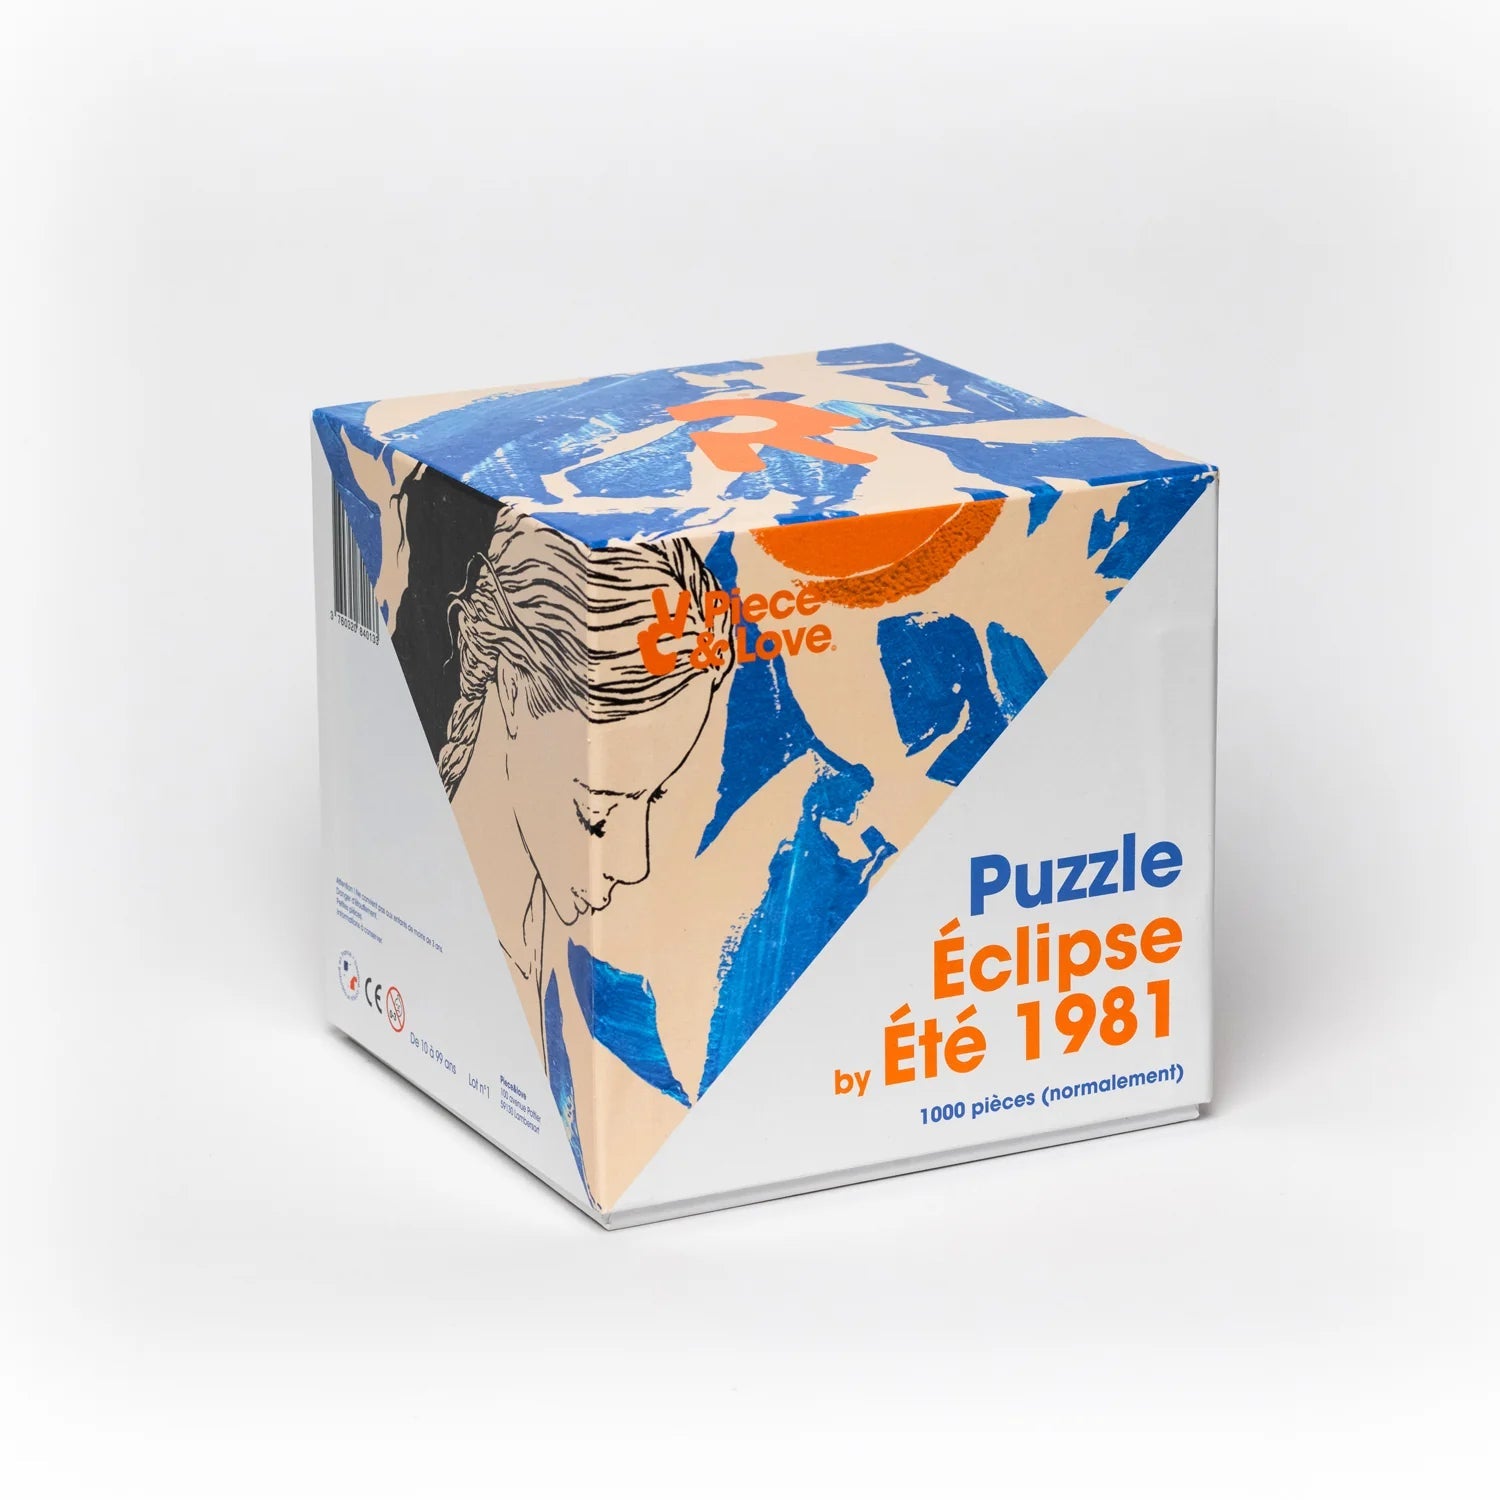 Puzzle 1000 pièces - Eclipse by Été 1981Piece & Love